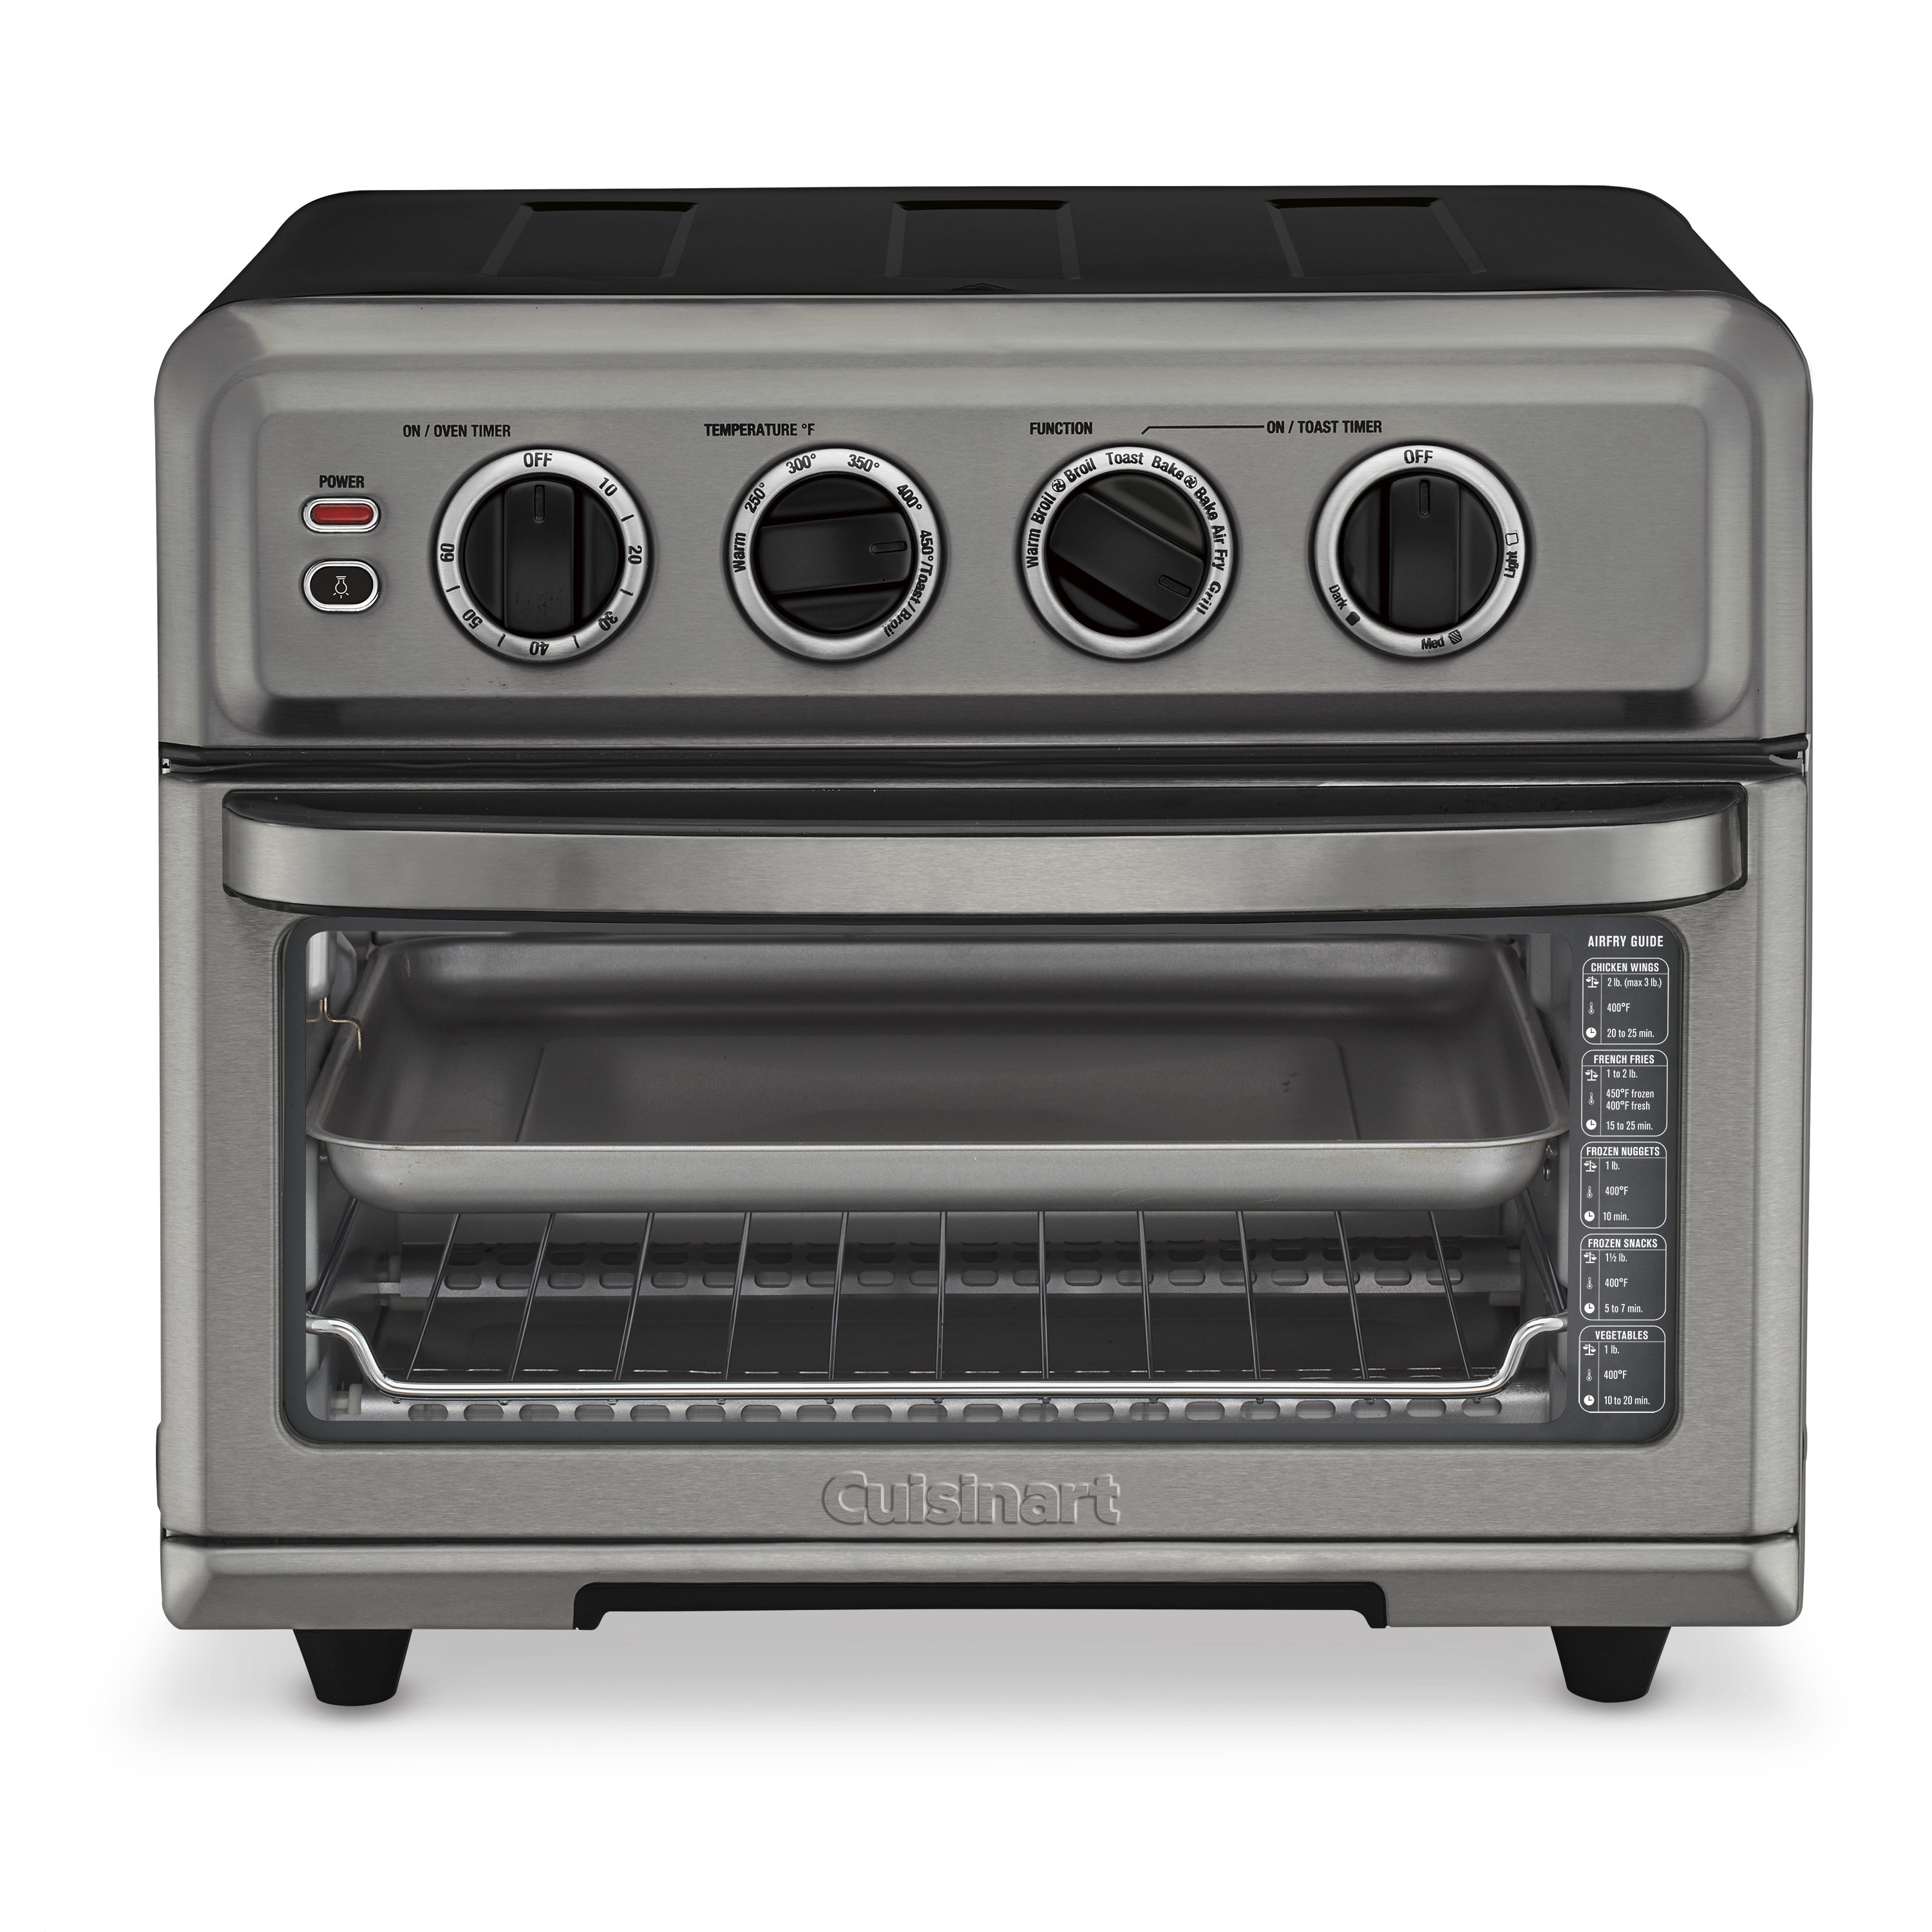 cascade Aannemelijk Recensie Cuisinart Airfryer Toaster Oven With Grill & Reviews | Wayfair